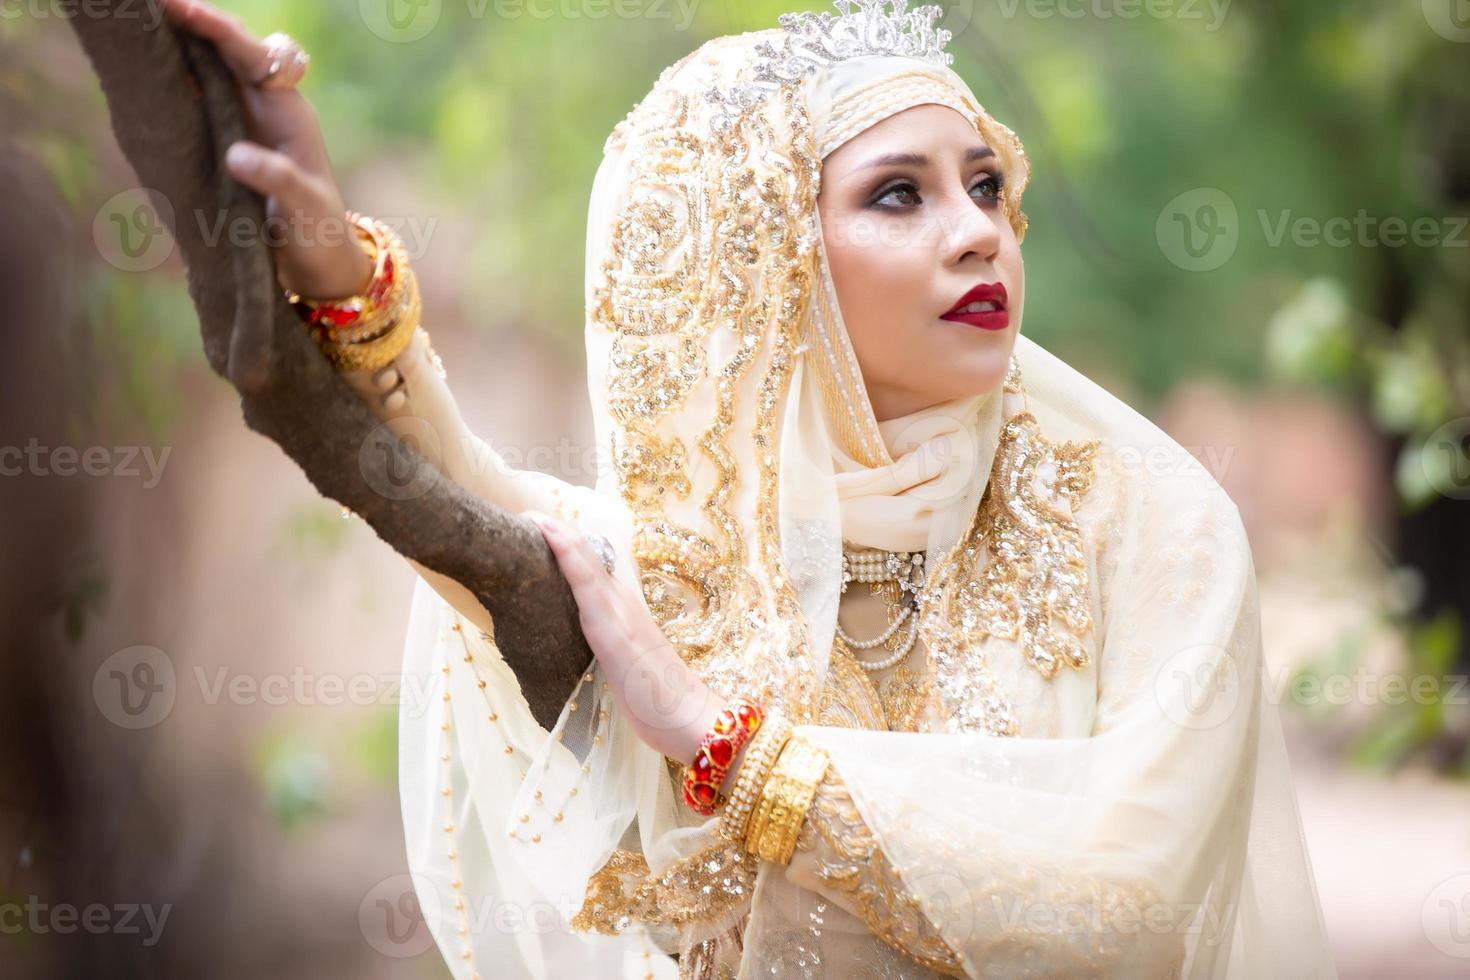 portret van een mooie Indiase meisje .india vrouw in traditionele sari jurk en sieraden. portret moslim bruid poseren foto